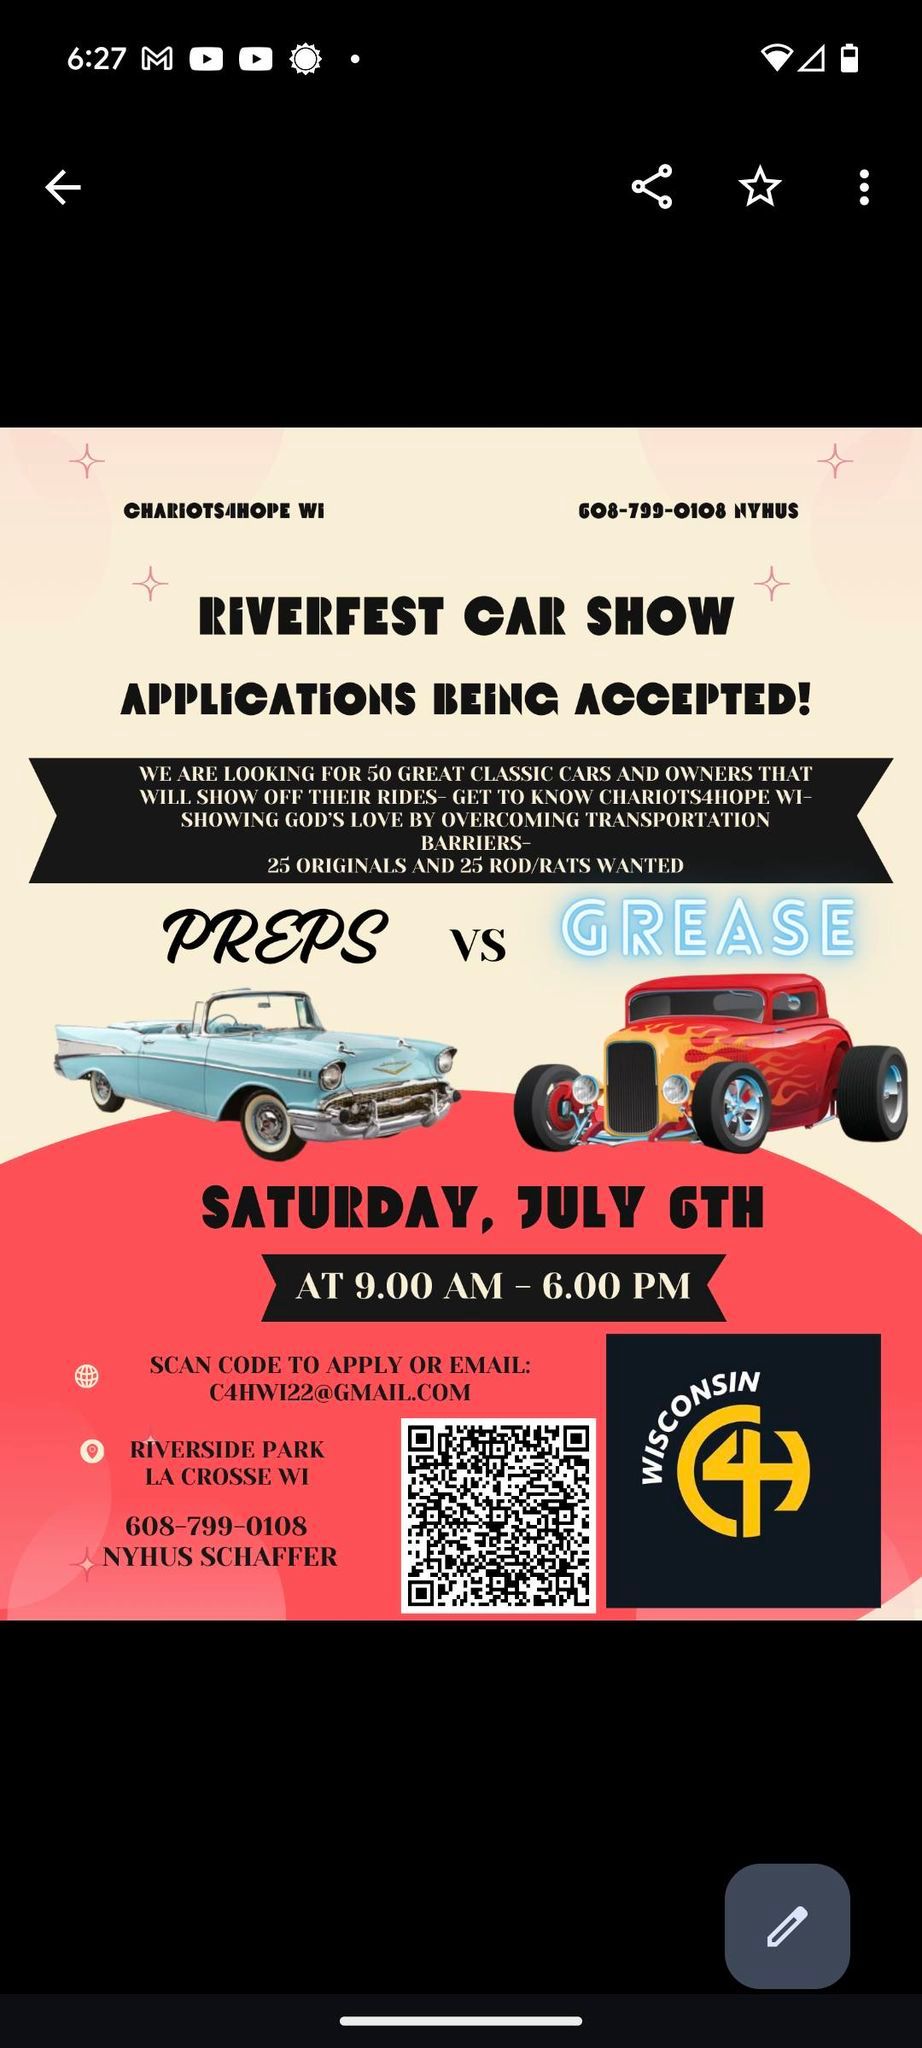 Riverfest Car Show